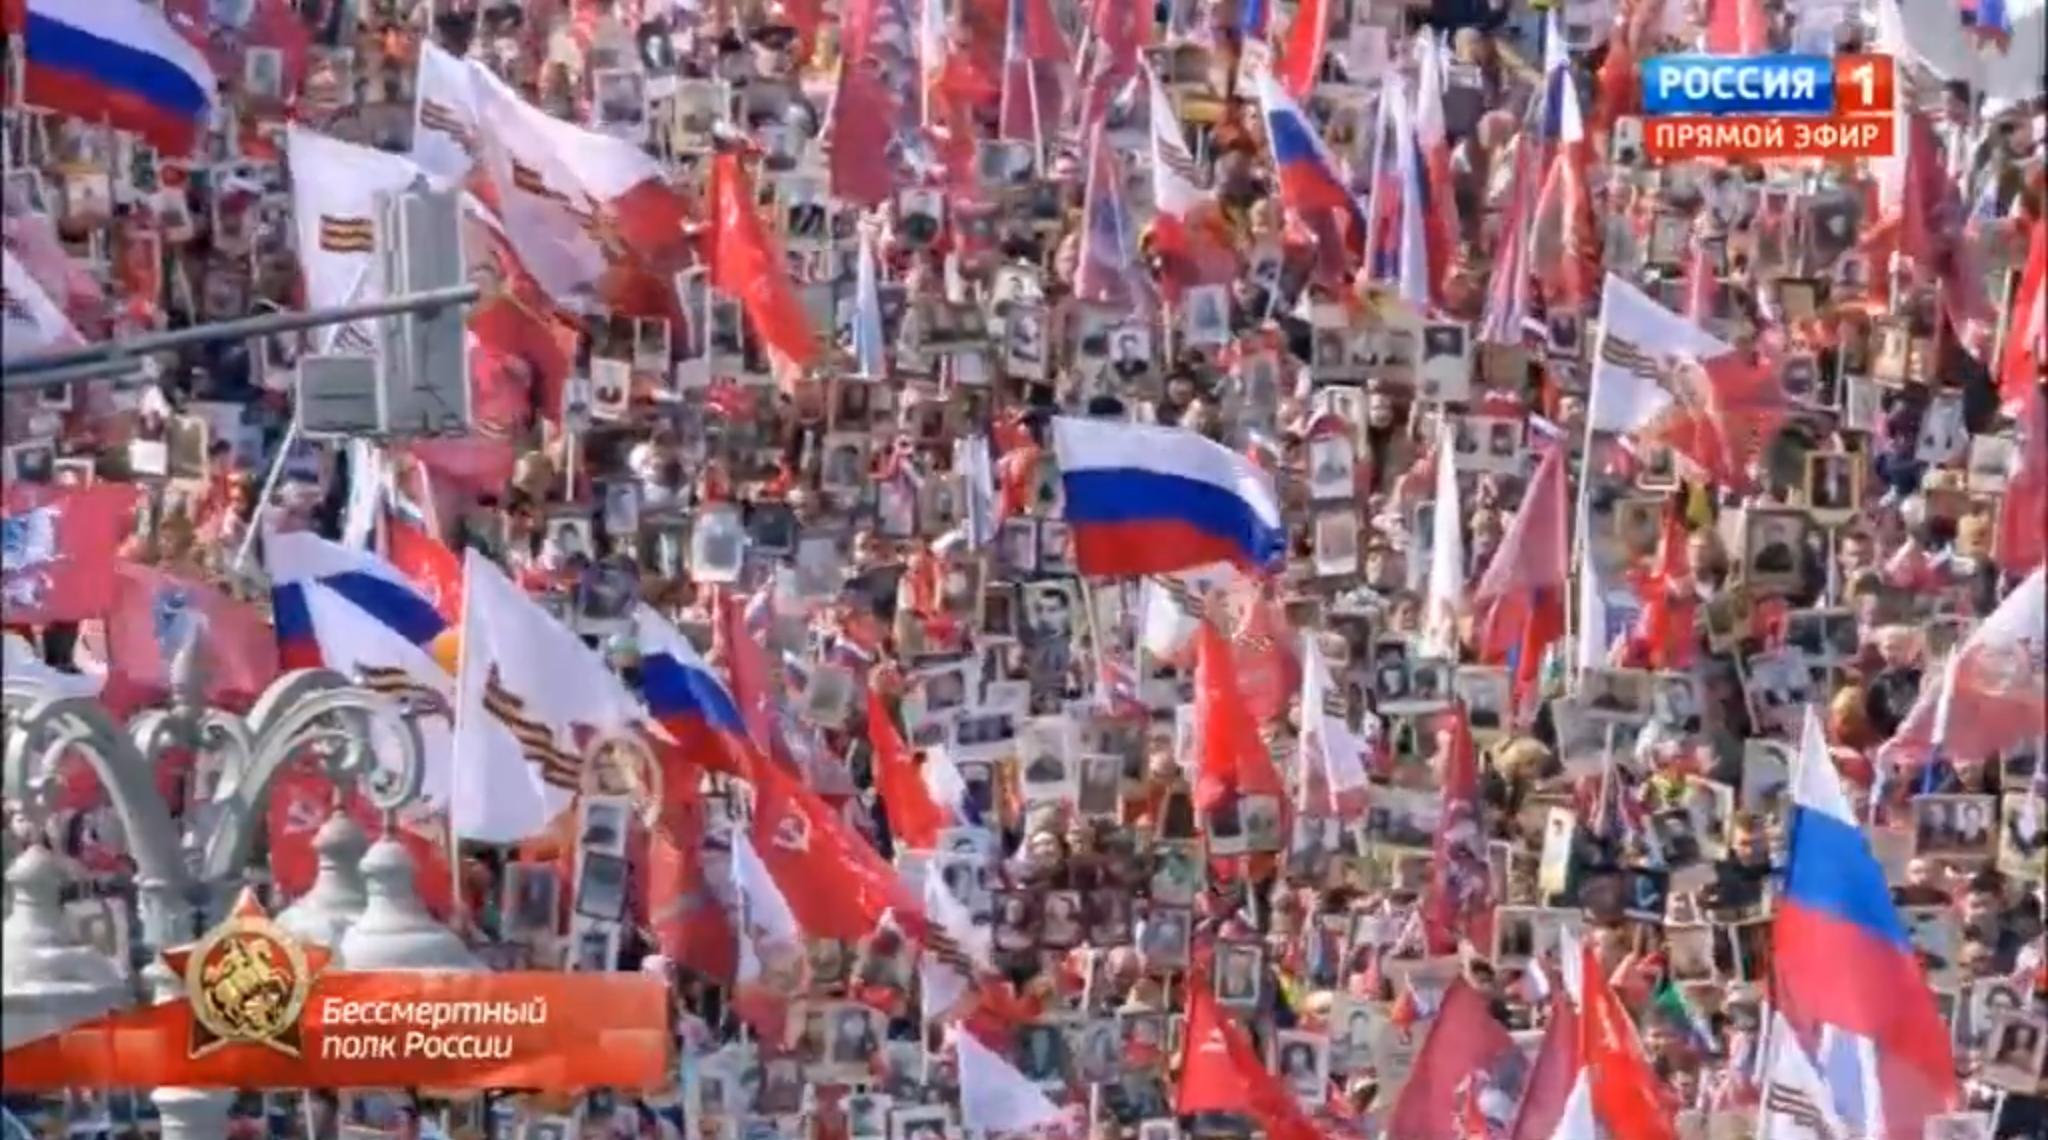 Tłum ludzi z flagami Rosji, ZSRR i portretami żołnierzy II wojny światpwej